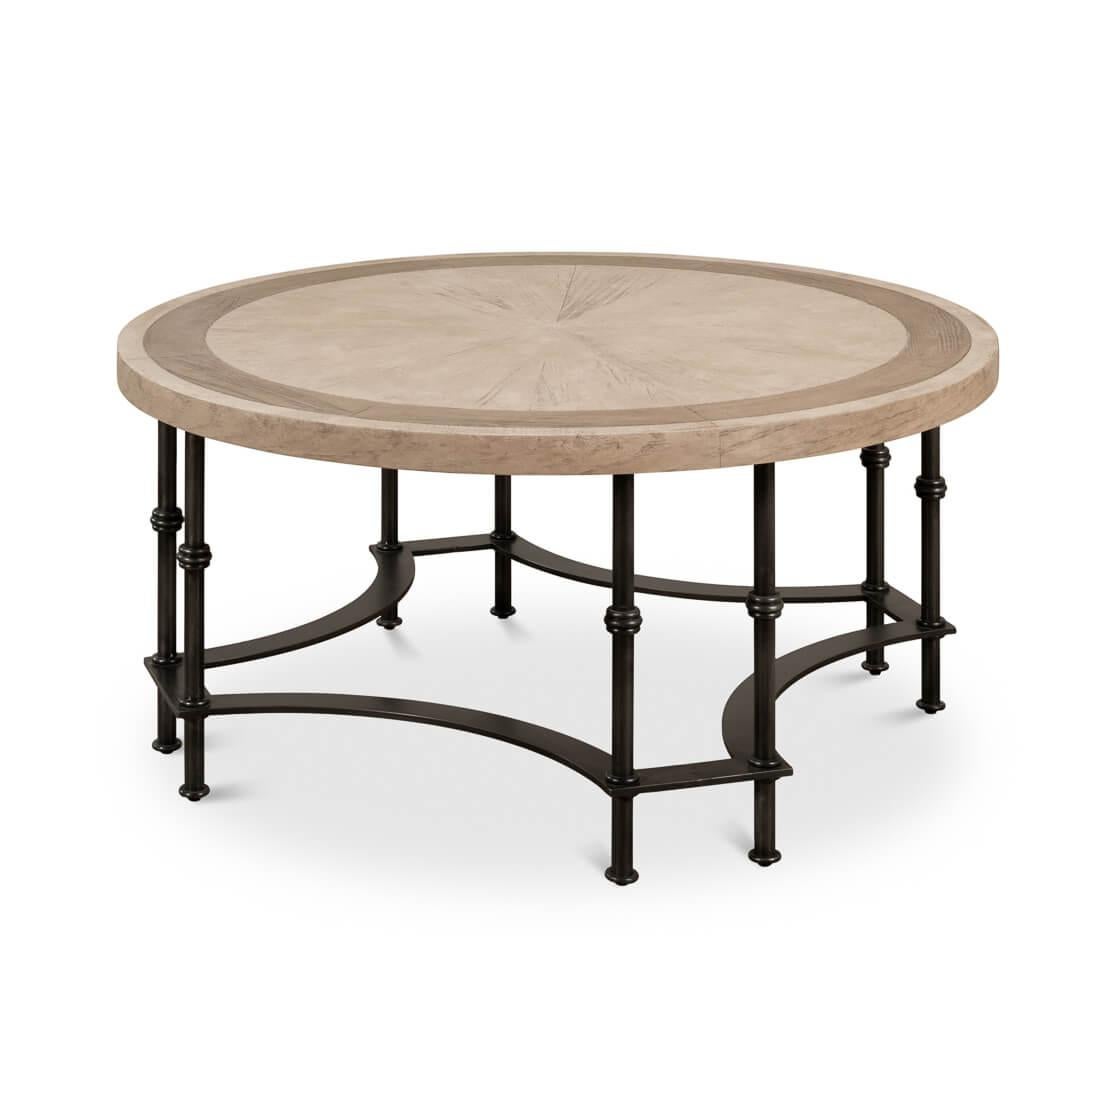 La base de cette table est un chef-d'œuvre de métallurgie, composée d'éléments tubulaires et plats forgés de manière complexe pour former une base qui incarne l'art et la symétrie géométrique.

Le plateau de table en pin massif, présenté dans une